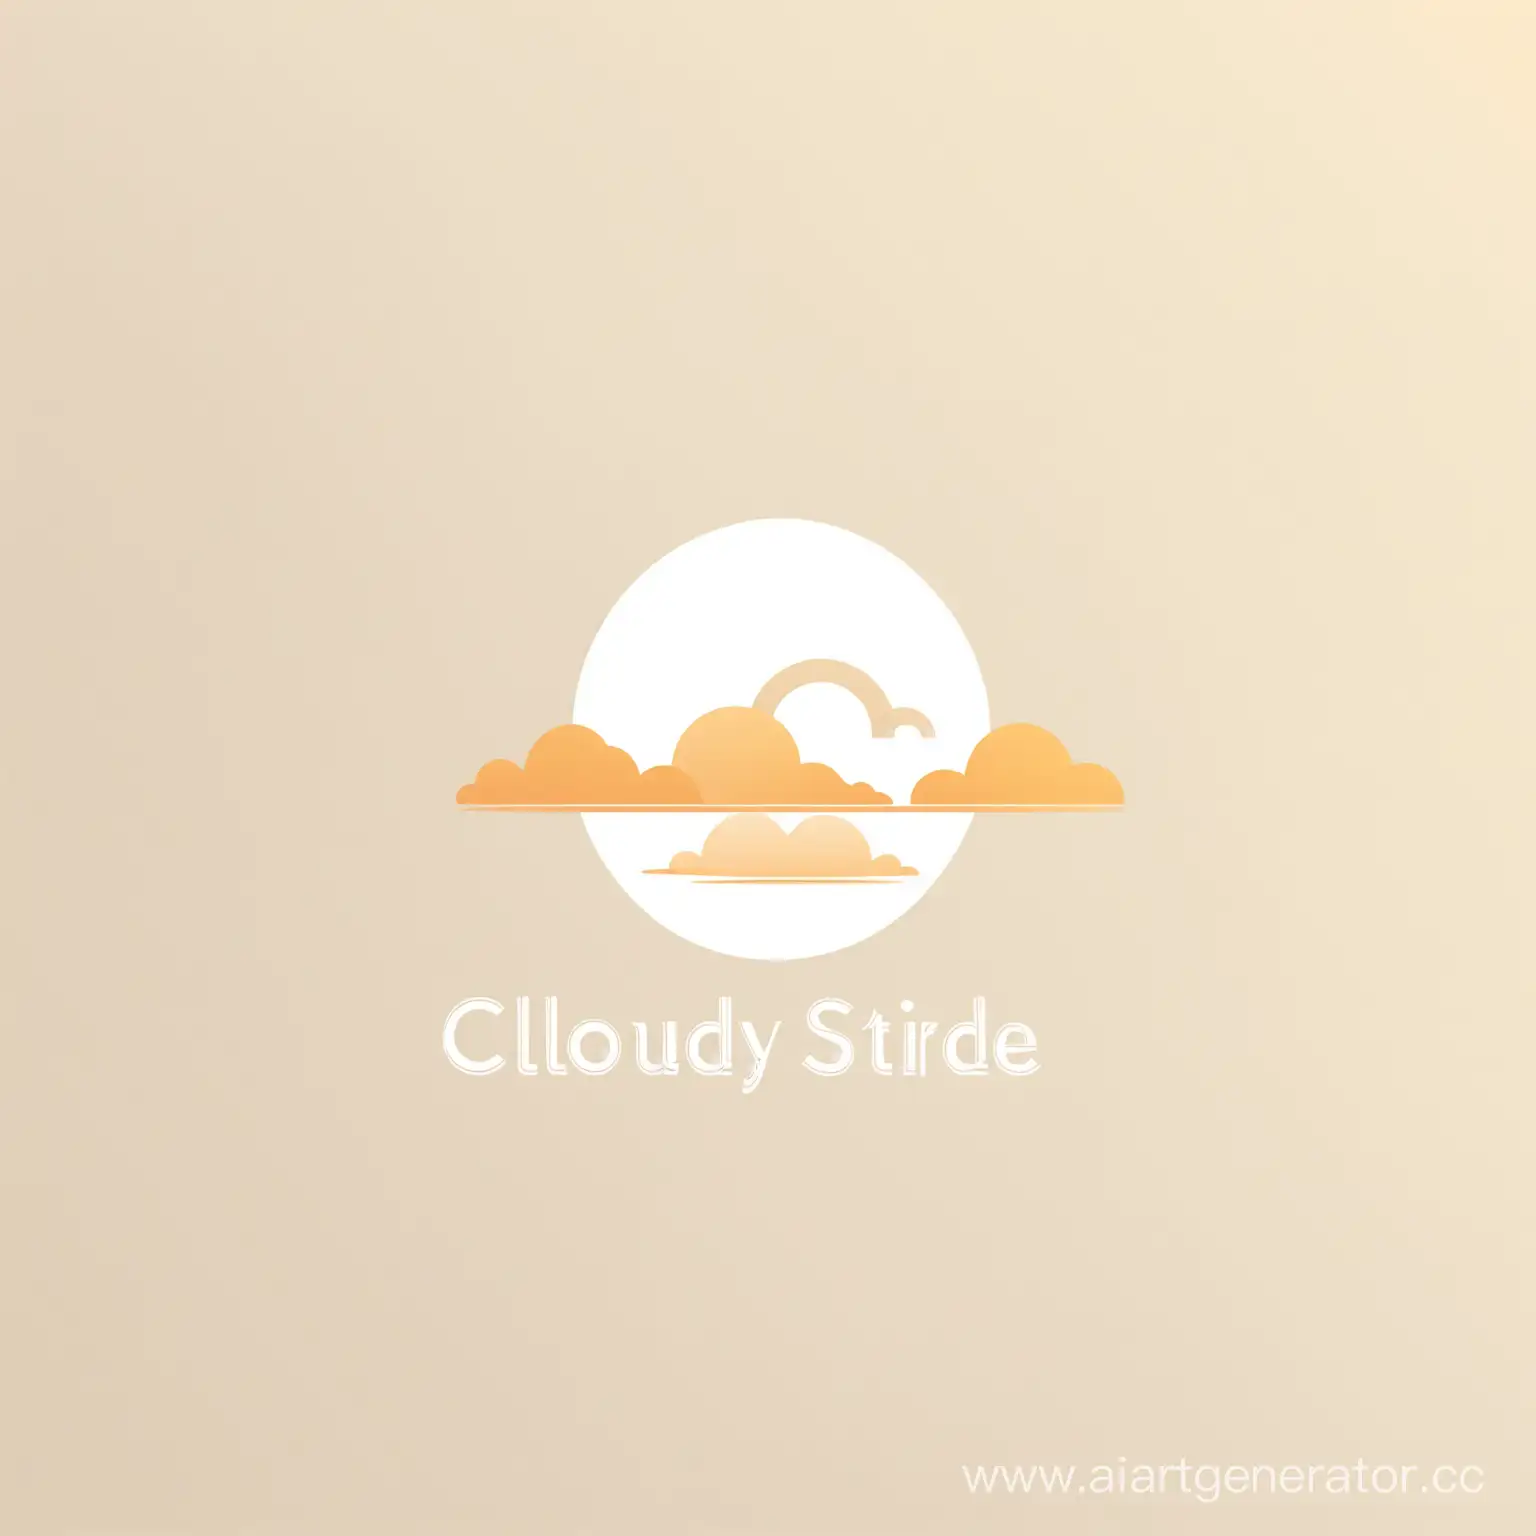 Создай логотип минималистический нежный с названием компании: Cloudy Stride